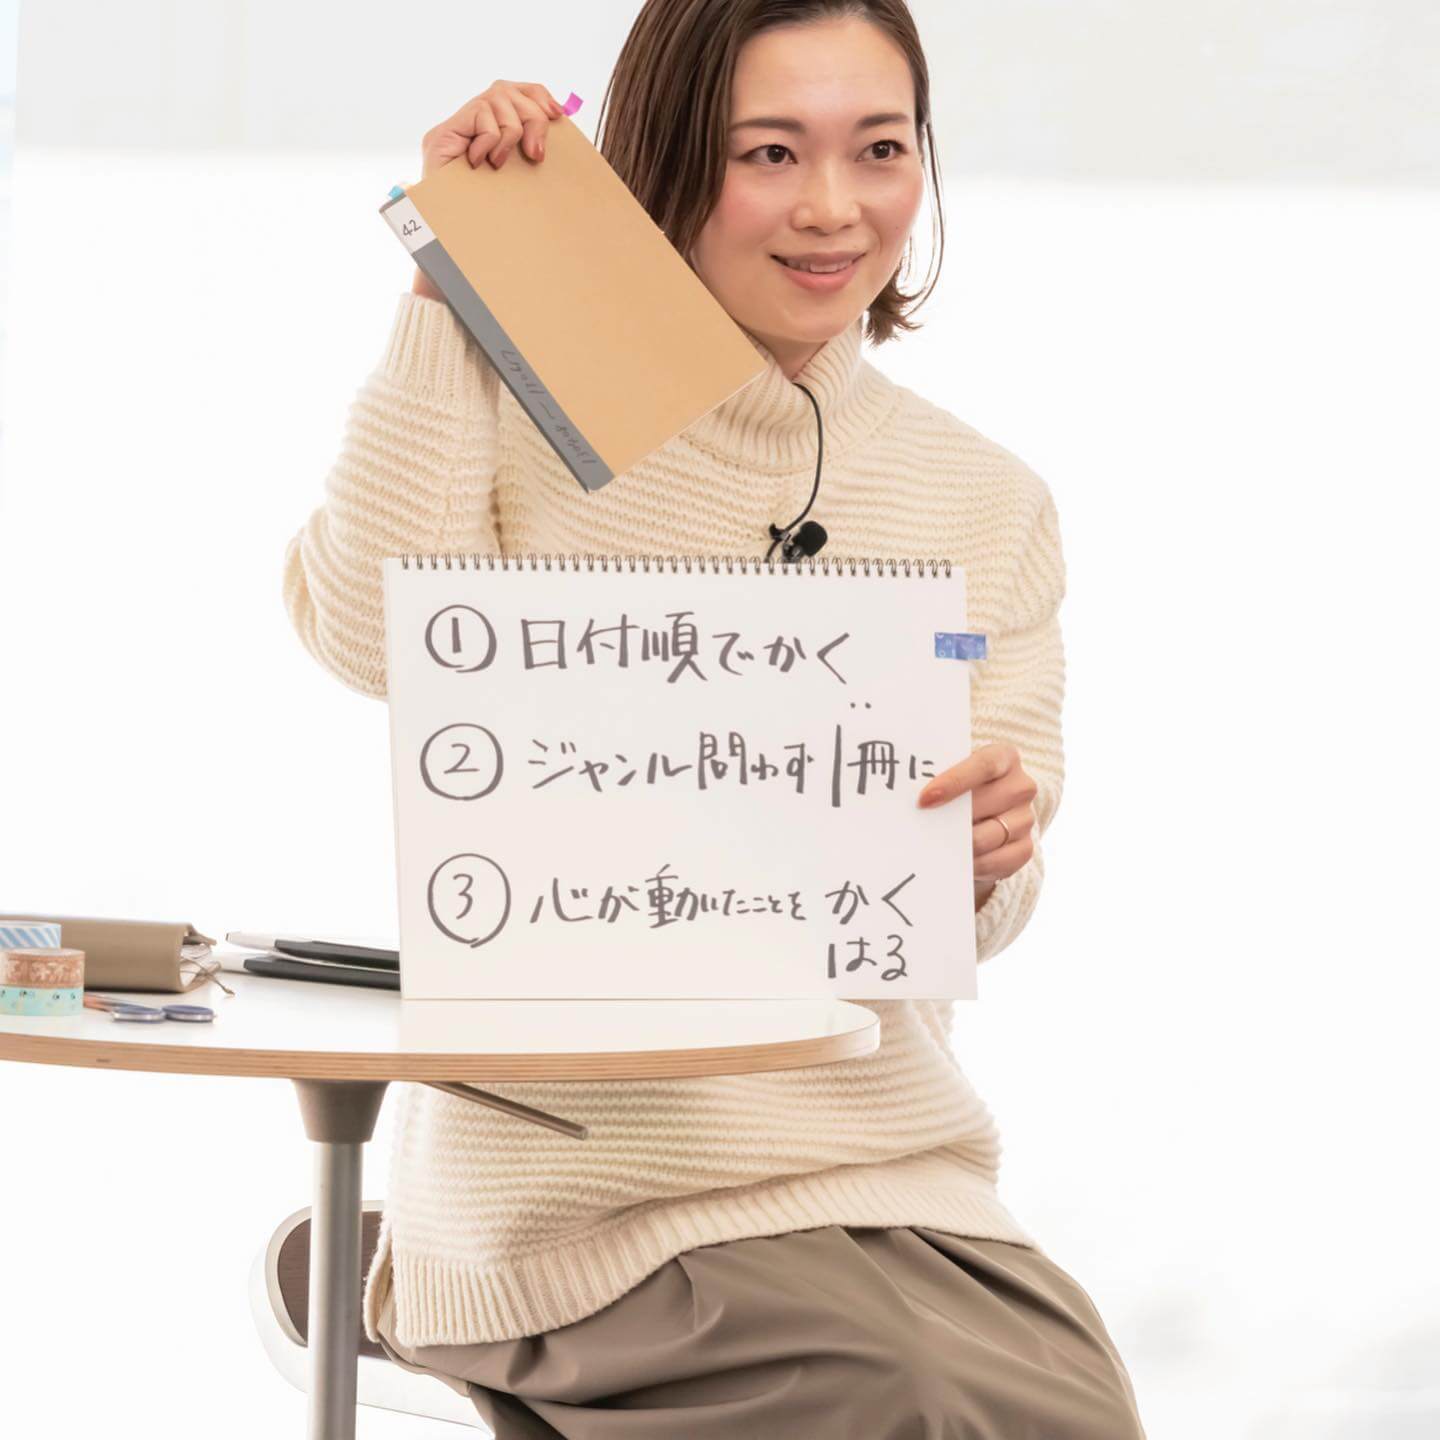 写真：OURHOME Emiさんの「マイノート」ワークショップで、フリップを用いて説明するOURHOME Emiさん